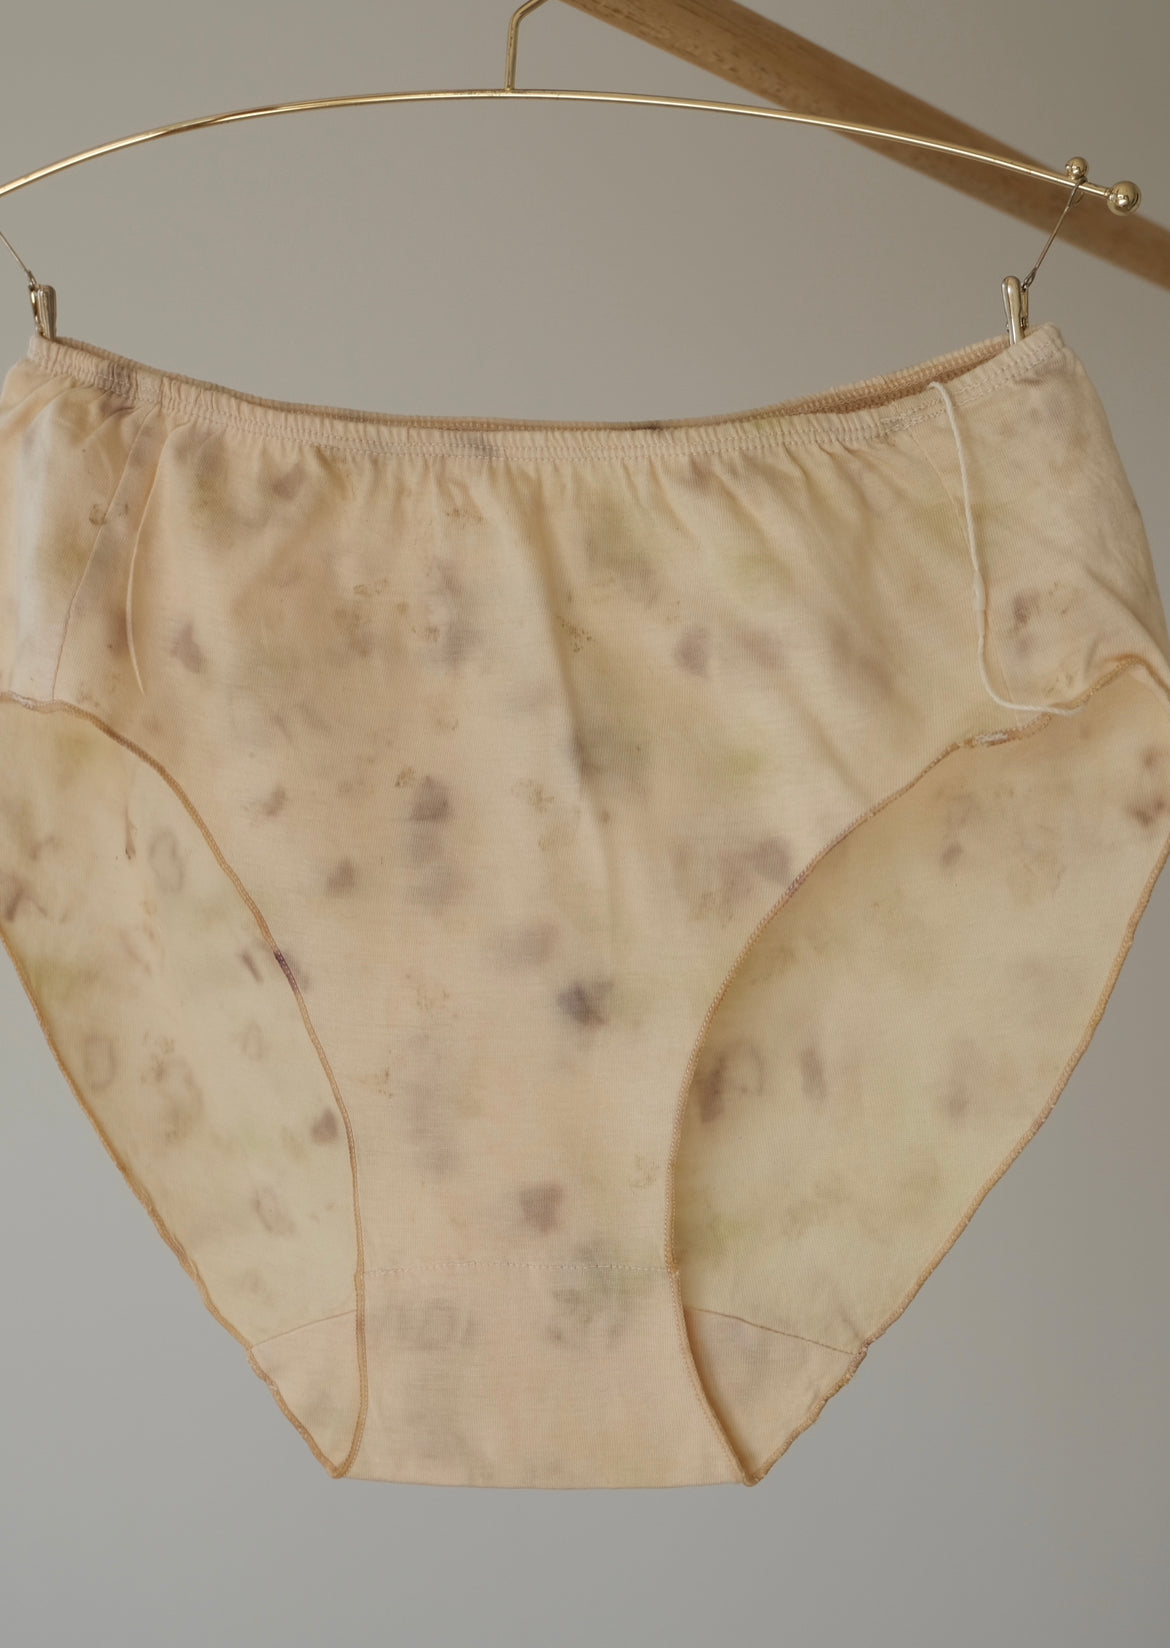 Bundledye shorts size/L ①